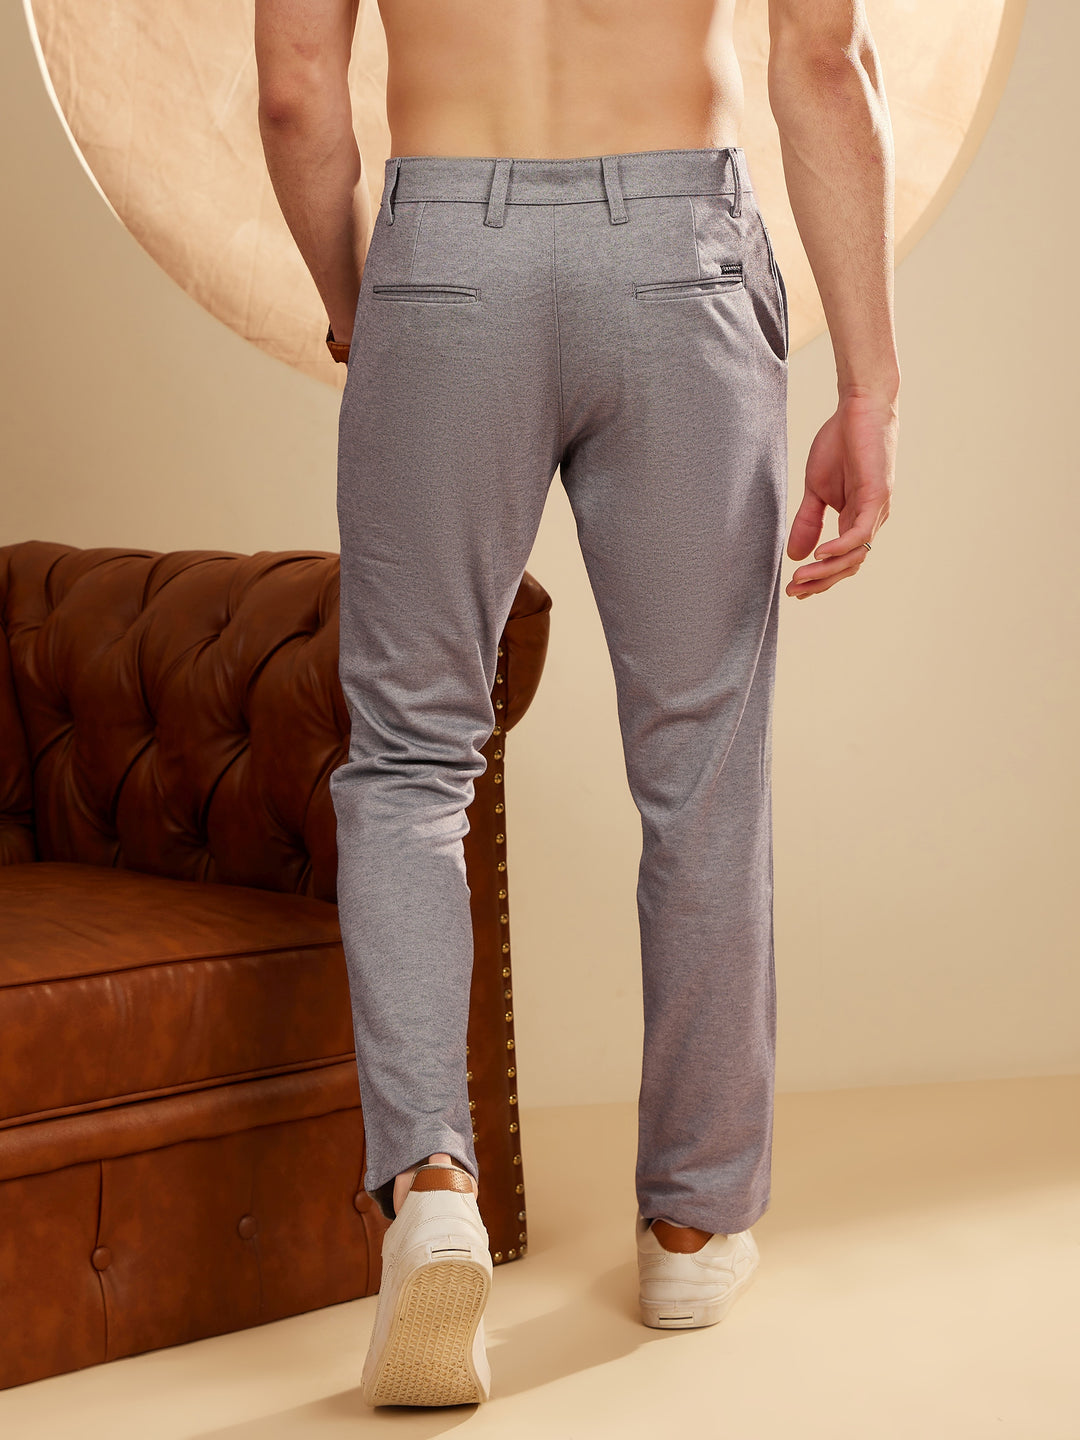 DENNISON Bluish Grey 4-Way Lycra Trouser